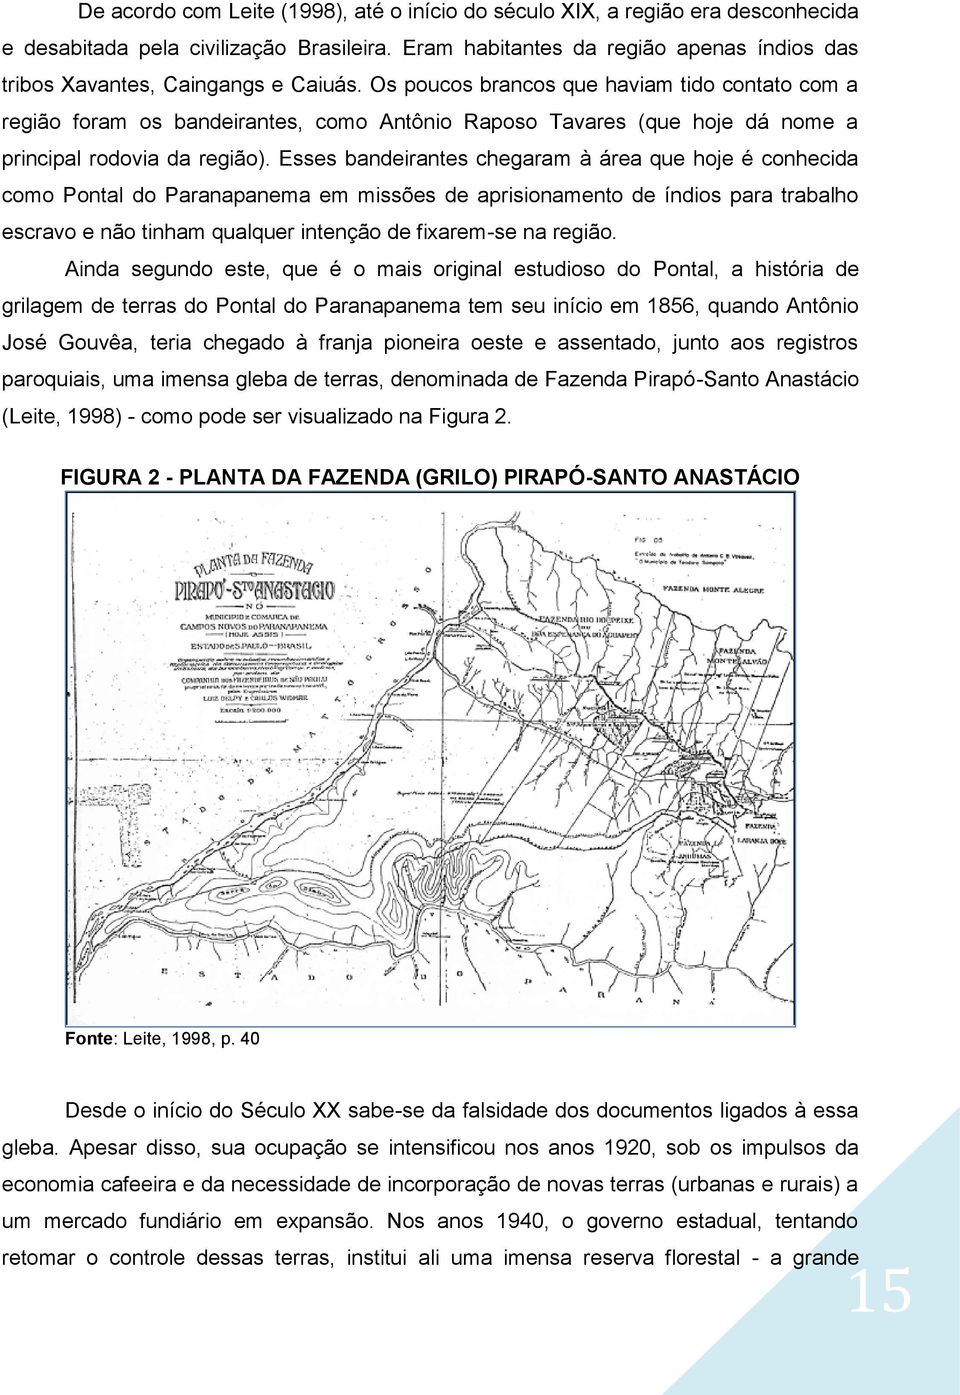 Os poucos brancos que haviam tido contato com a região foram os bandeirantes, como Antônio Raposo Tavares (que hoje dá nome a principal rodovia da região).